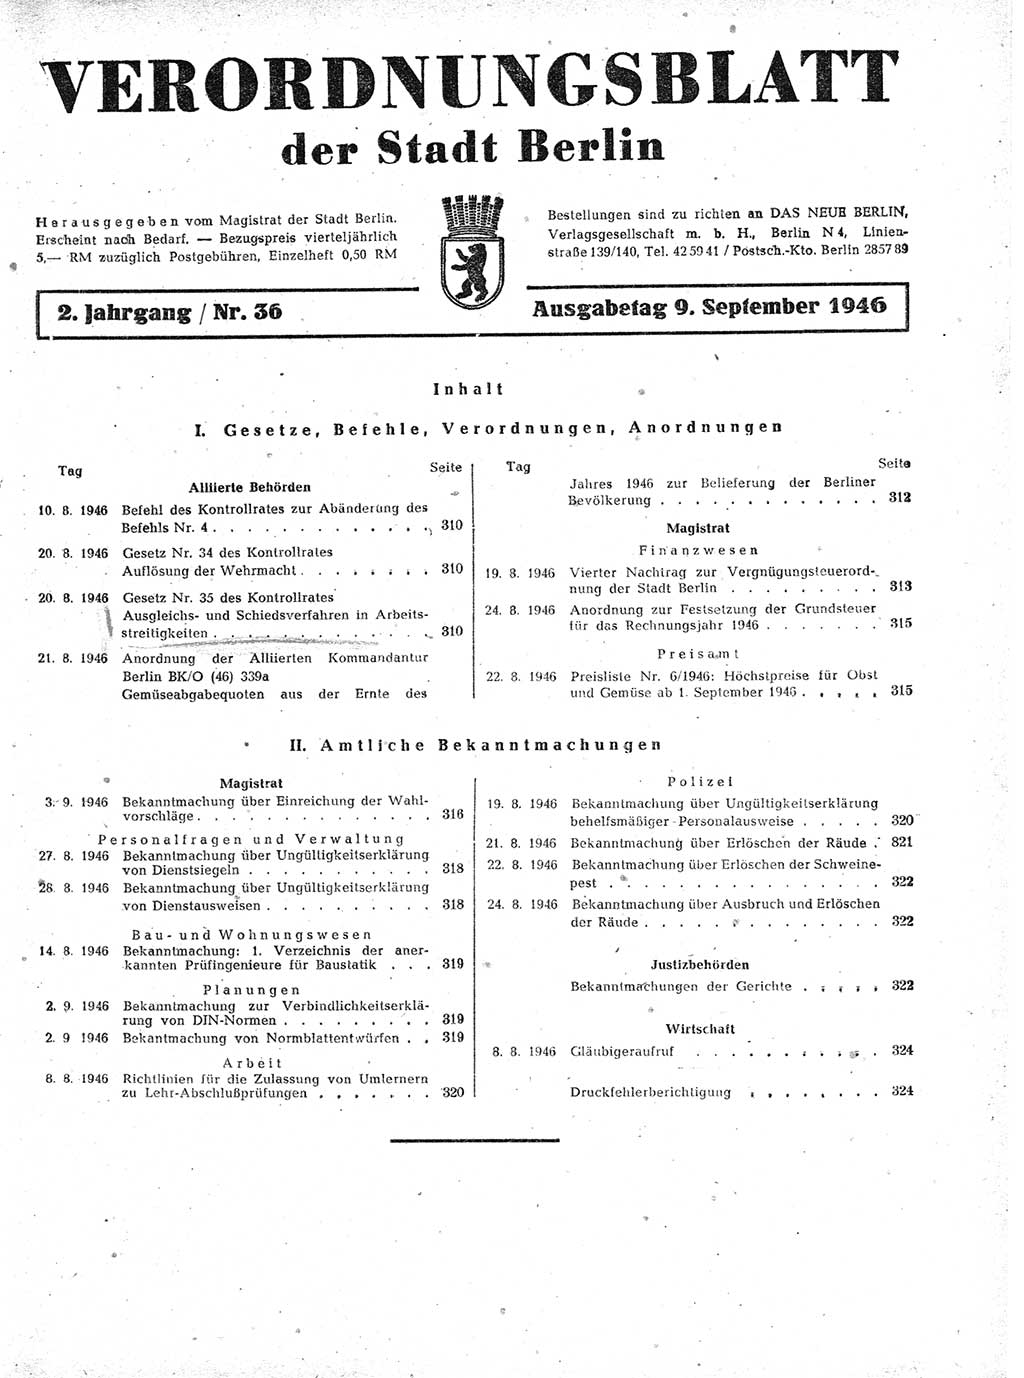 Verordnungsblatt (VOBl.) der Stadt Berlin, für Groß-Berlin 1946, Seite 309 (VOBl. Bln. 1946, S. 309)